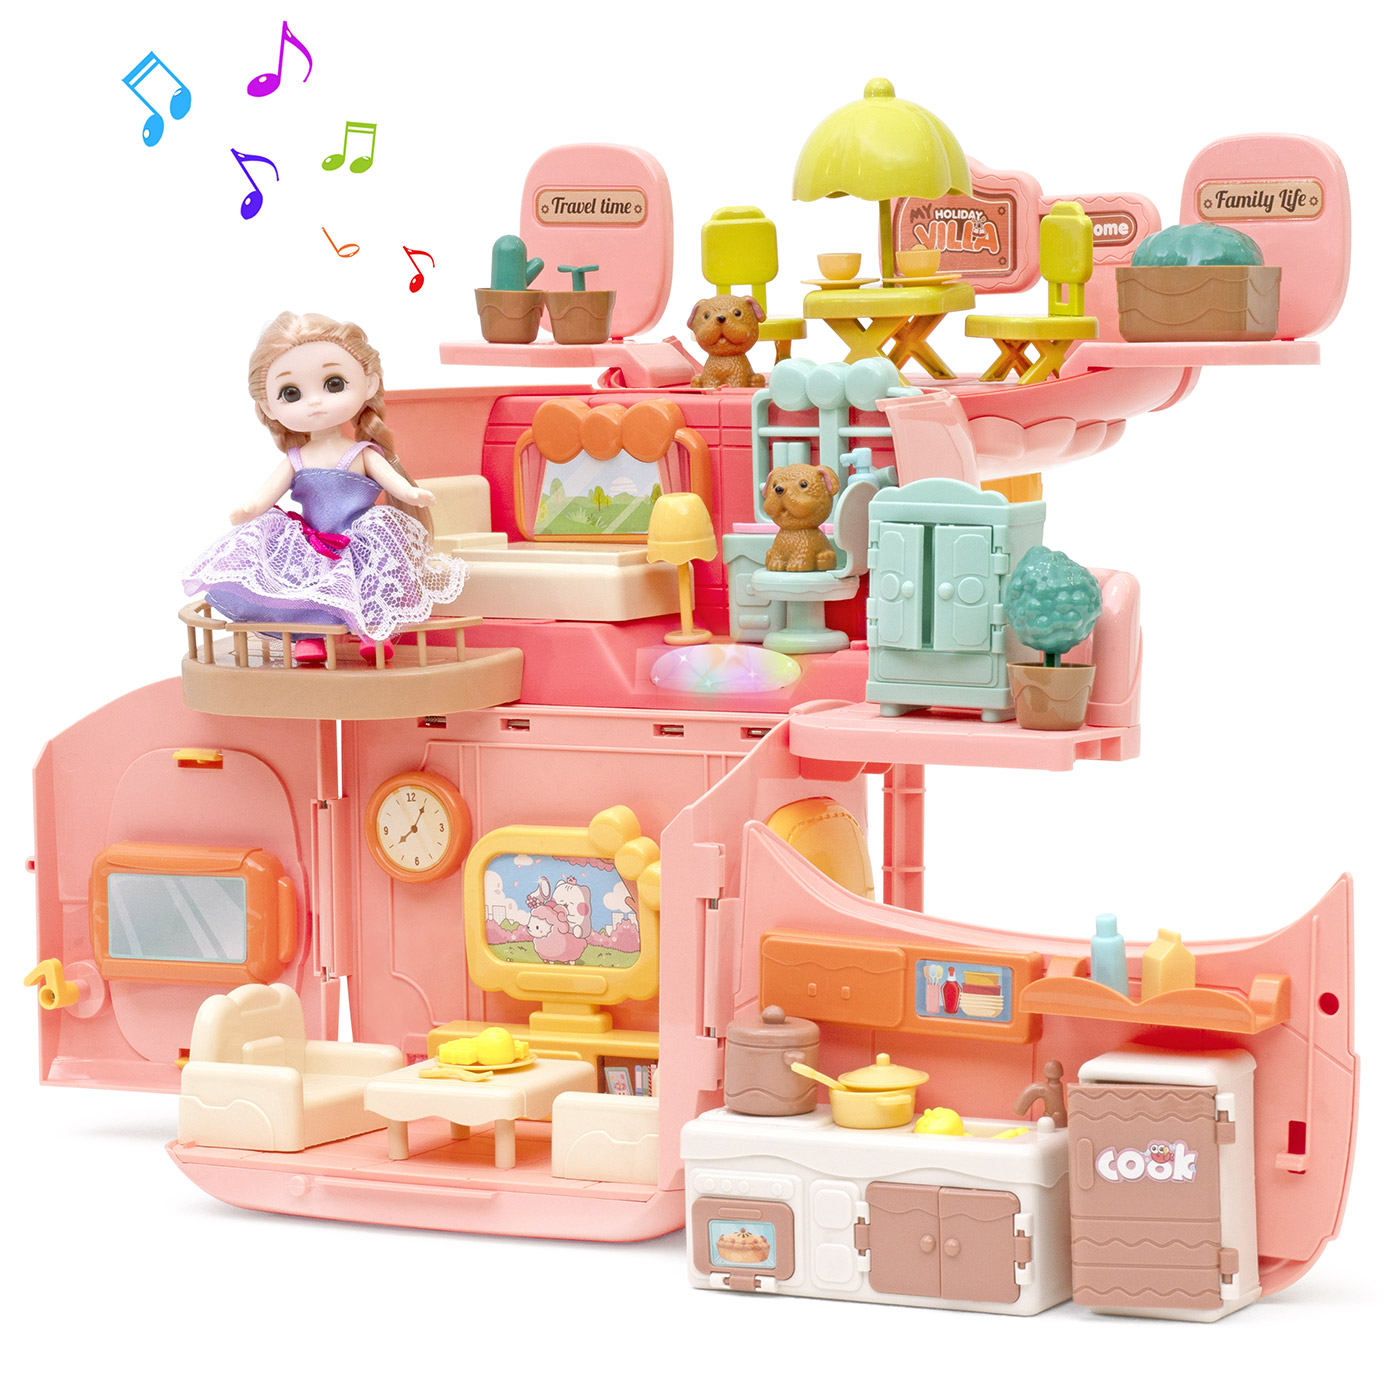 Игровой набор с куклами Funkids Домик Мечты кукольный домик с мебелью арт. CC6673 домик kidkraft для barbie особняк мечты 65082 ke